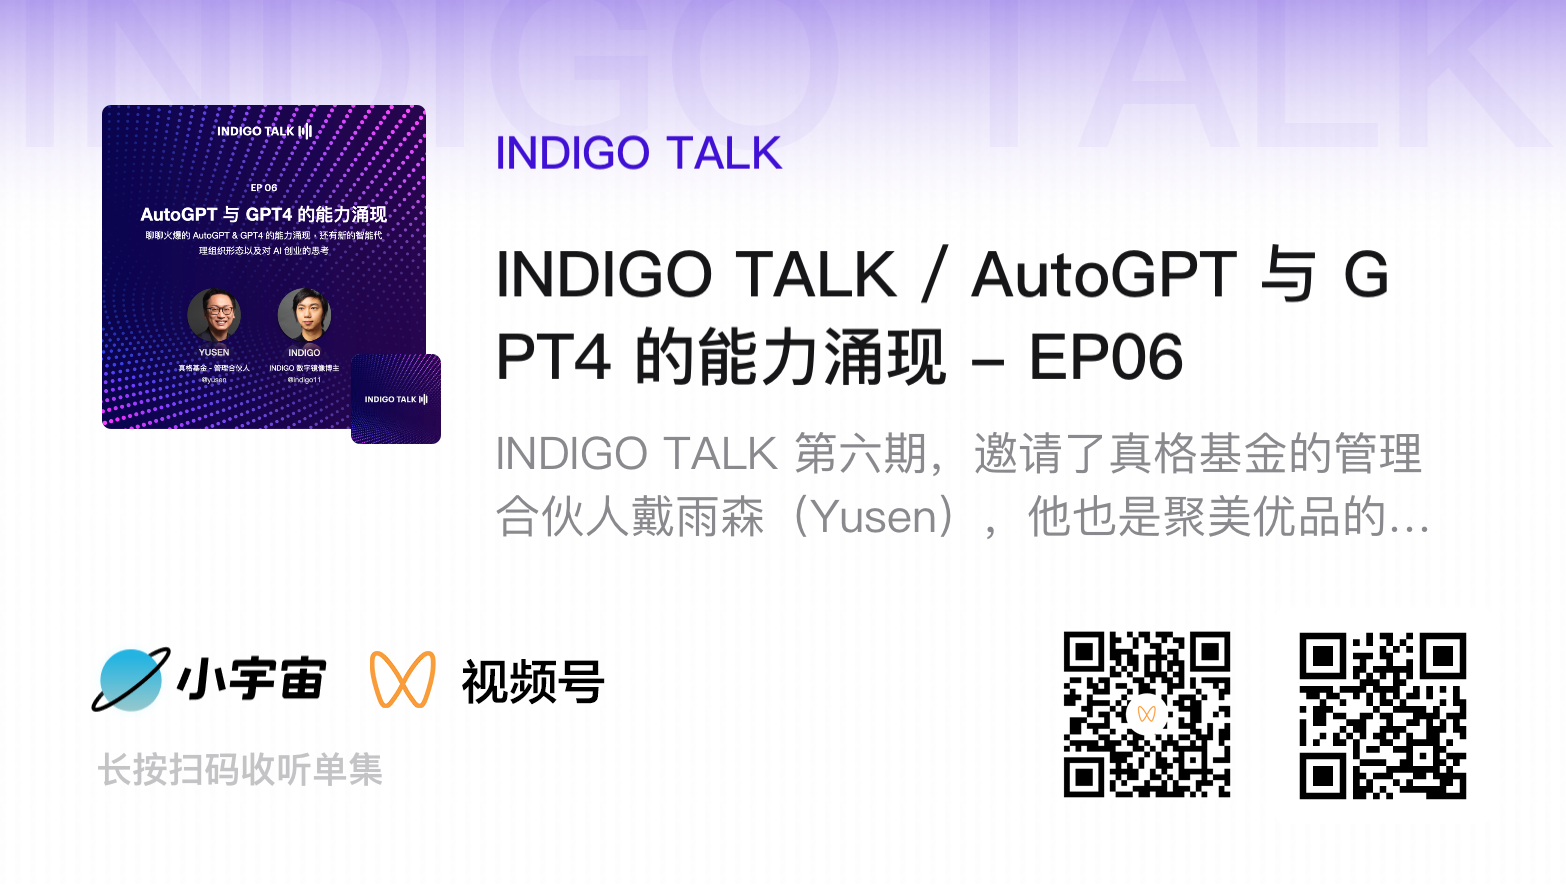 INDIGO TALK / AutoGPT 与 GPT4 的能力涌现 - EP06